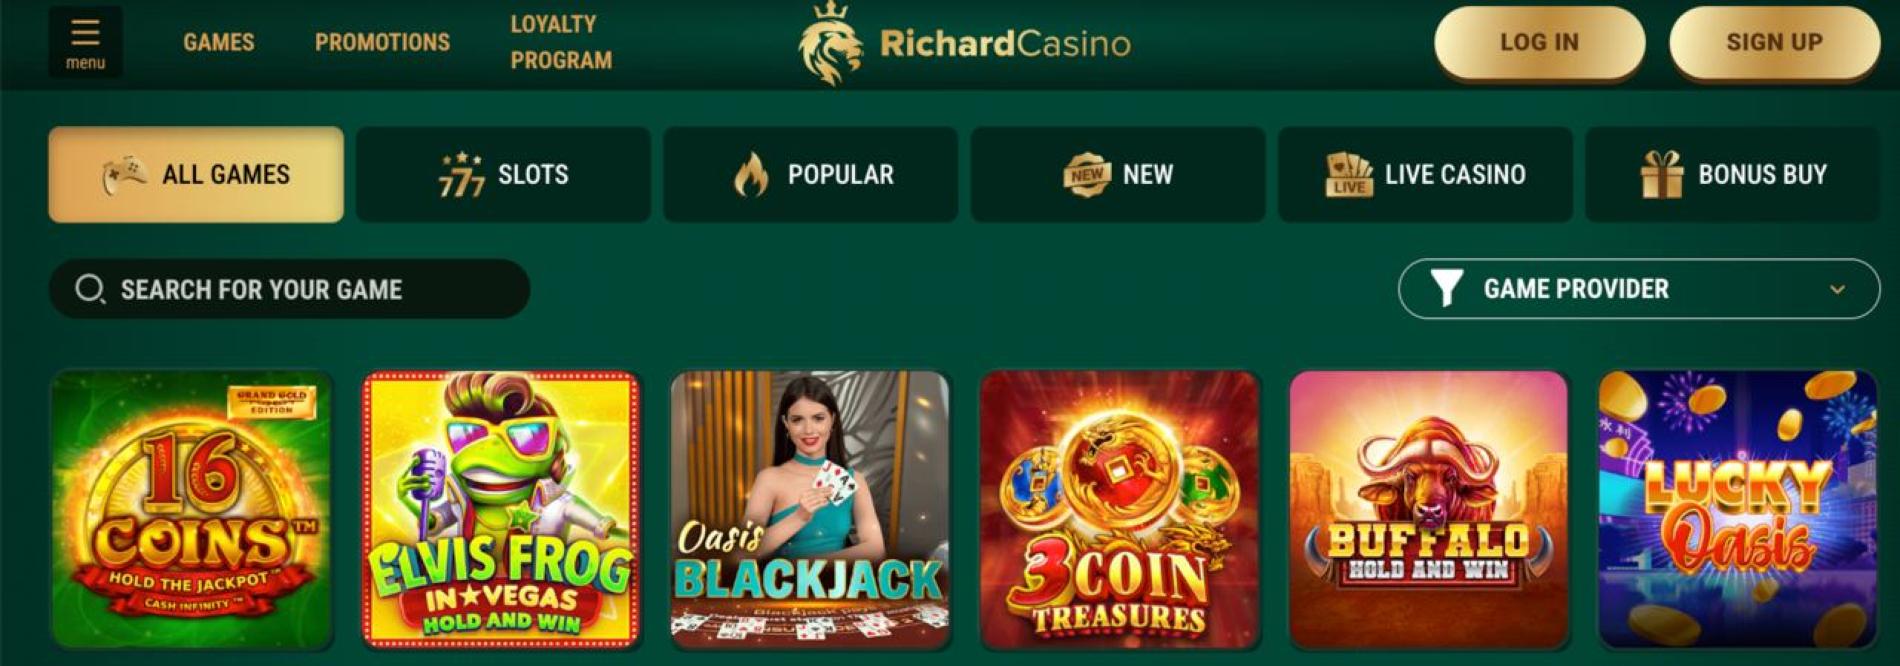 Richard Casino games